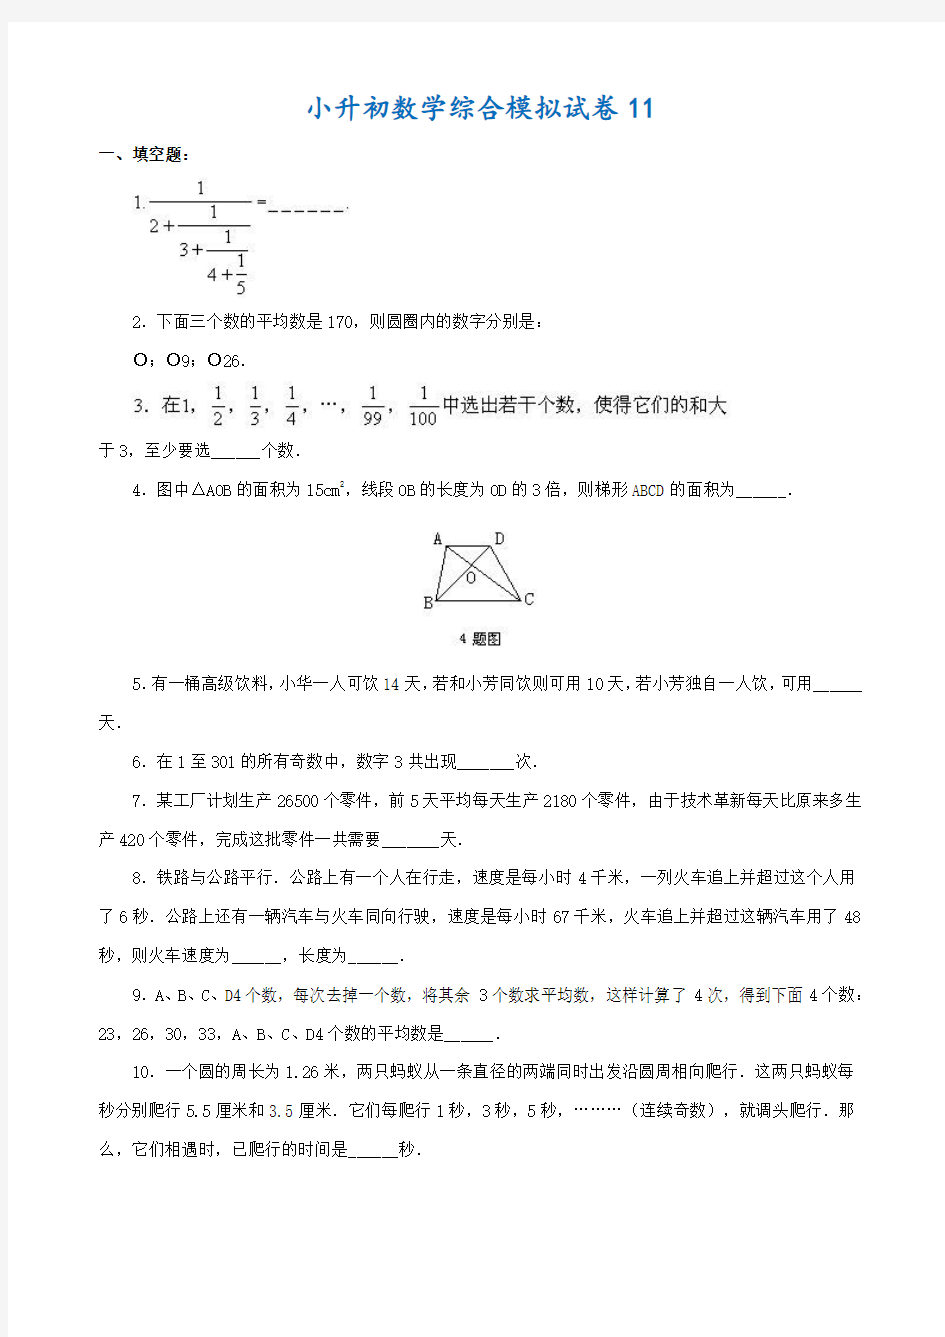 2018-2019衡阳市小升初数学模拟试卷(共10套)附详细答案附答案